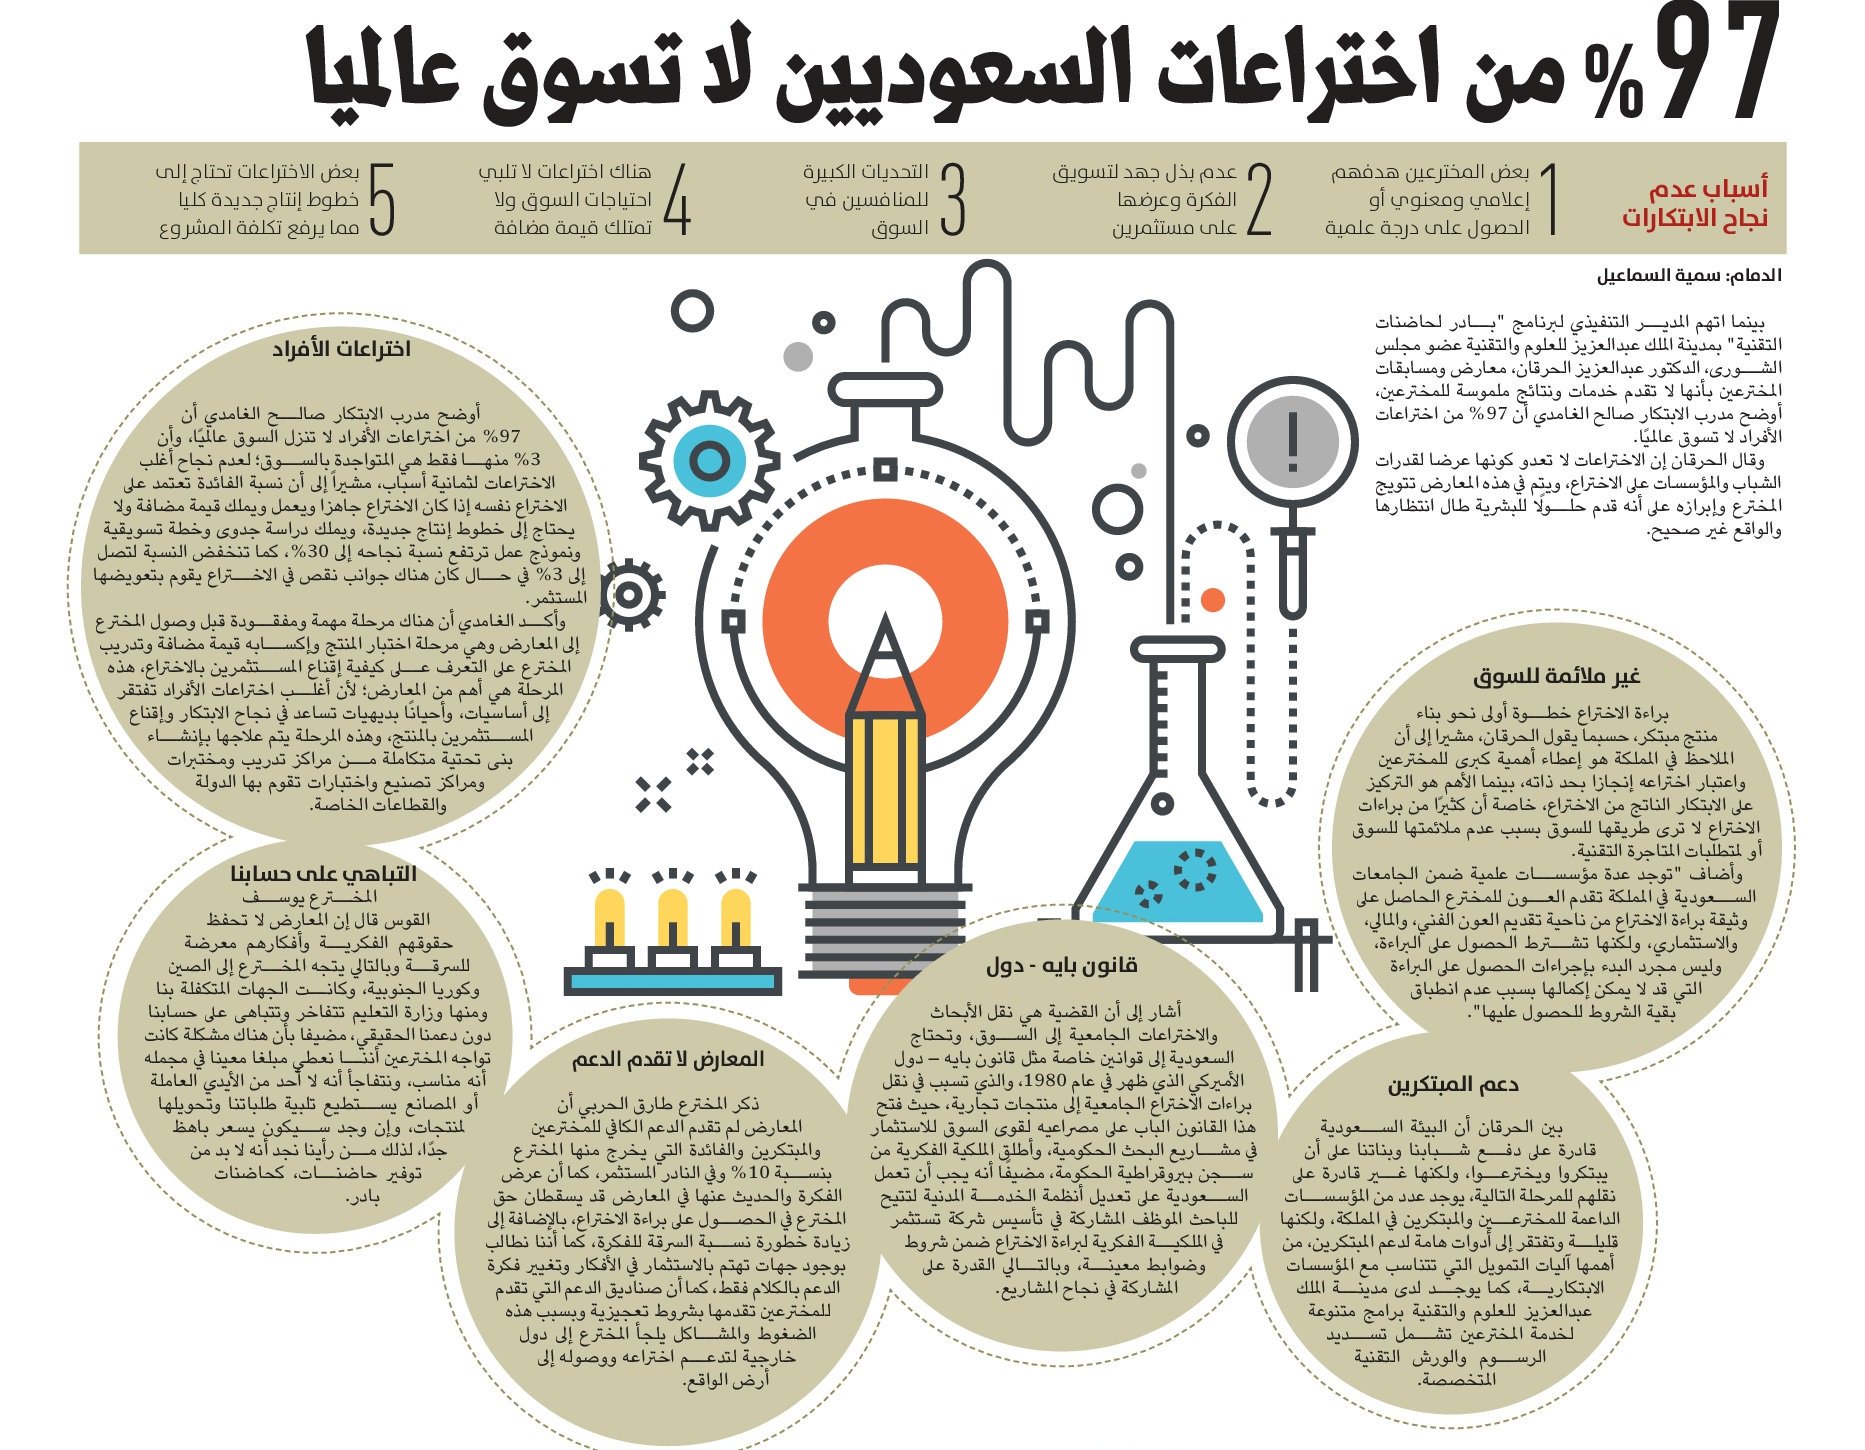 X 上的 أخبار السعودية：「%97 من اختراعات السعوديين لا تسوق عالميا! -  https://t.co/YZ0Y2NMgSo」 / X